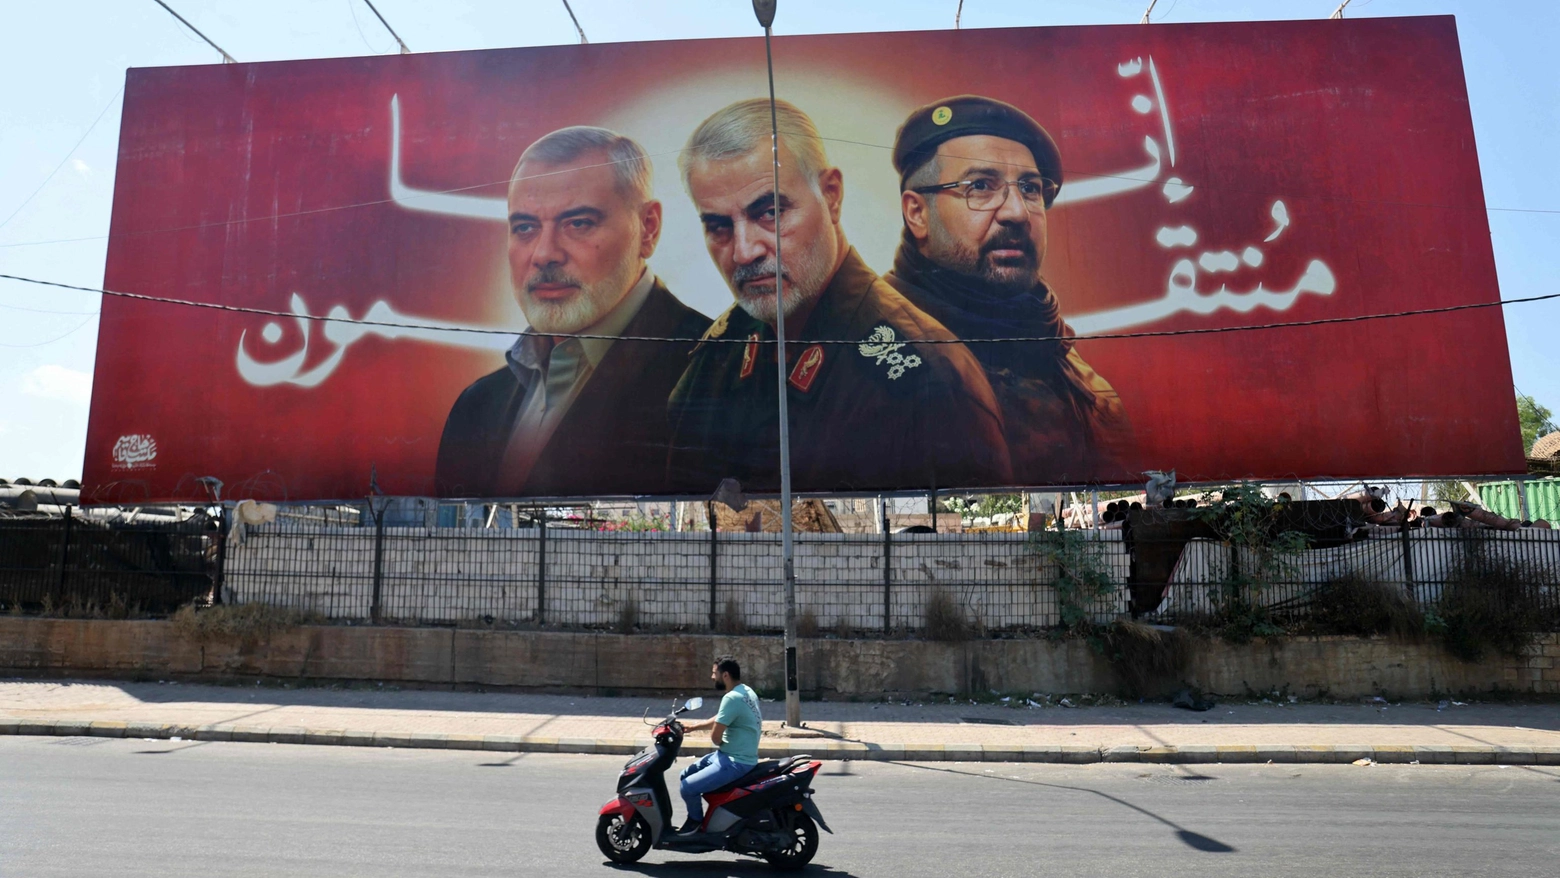 Un cartellone con il ritratto di Ismail Haniyeh, Qasem Soleimani e Fuad Shukr in una strada vicino all'aeroporto di Beirut (Ansa)